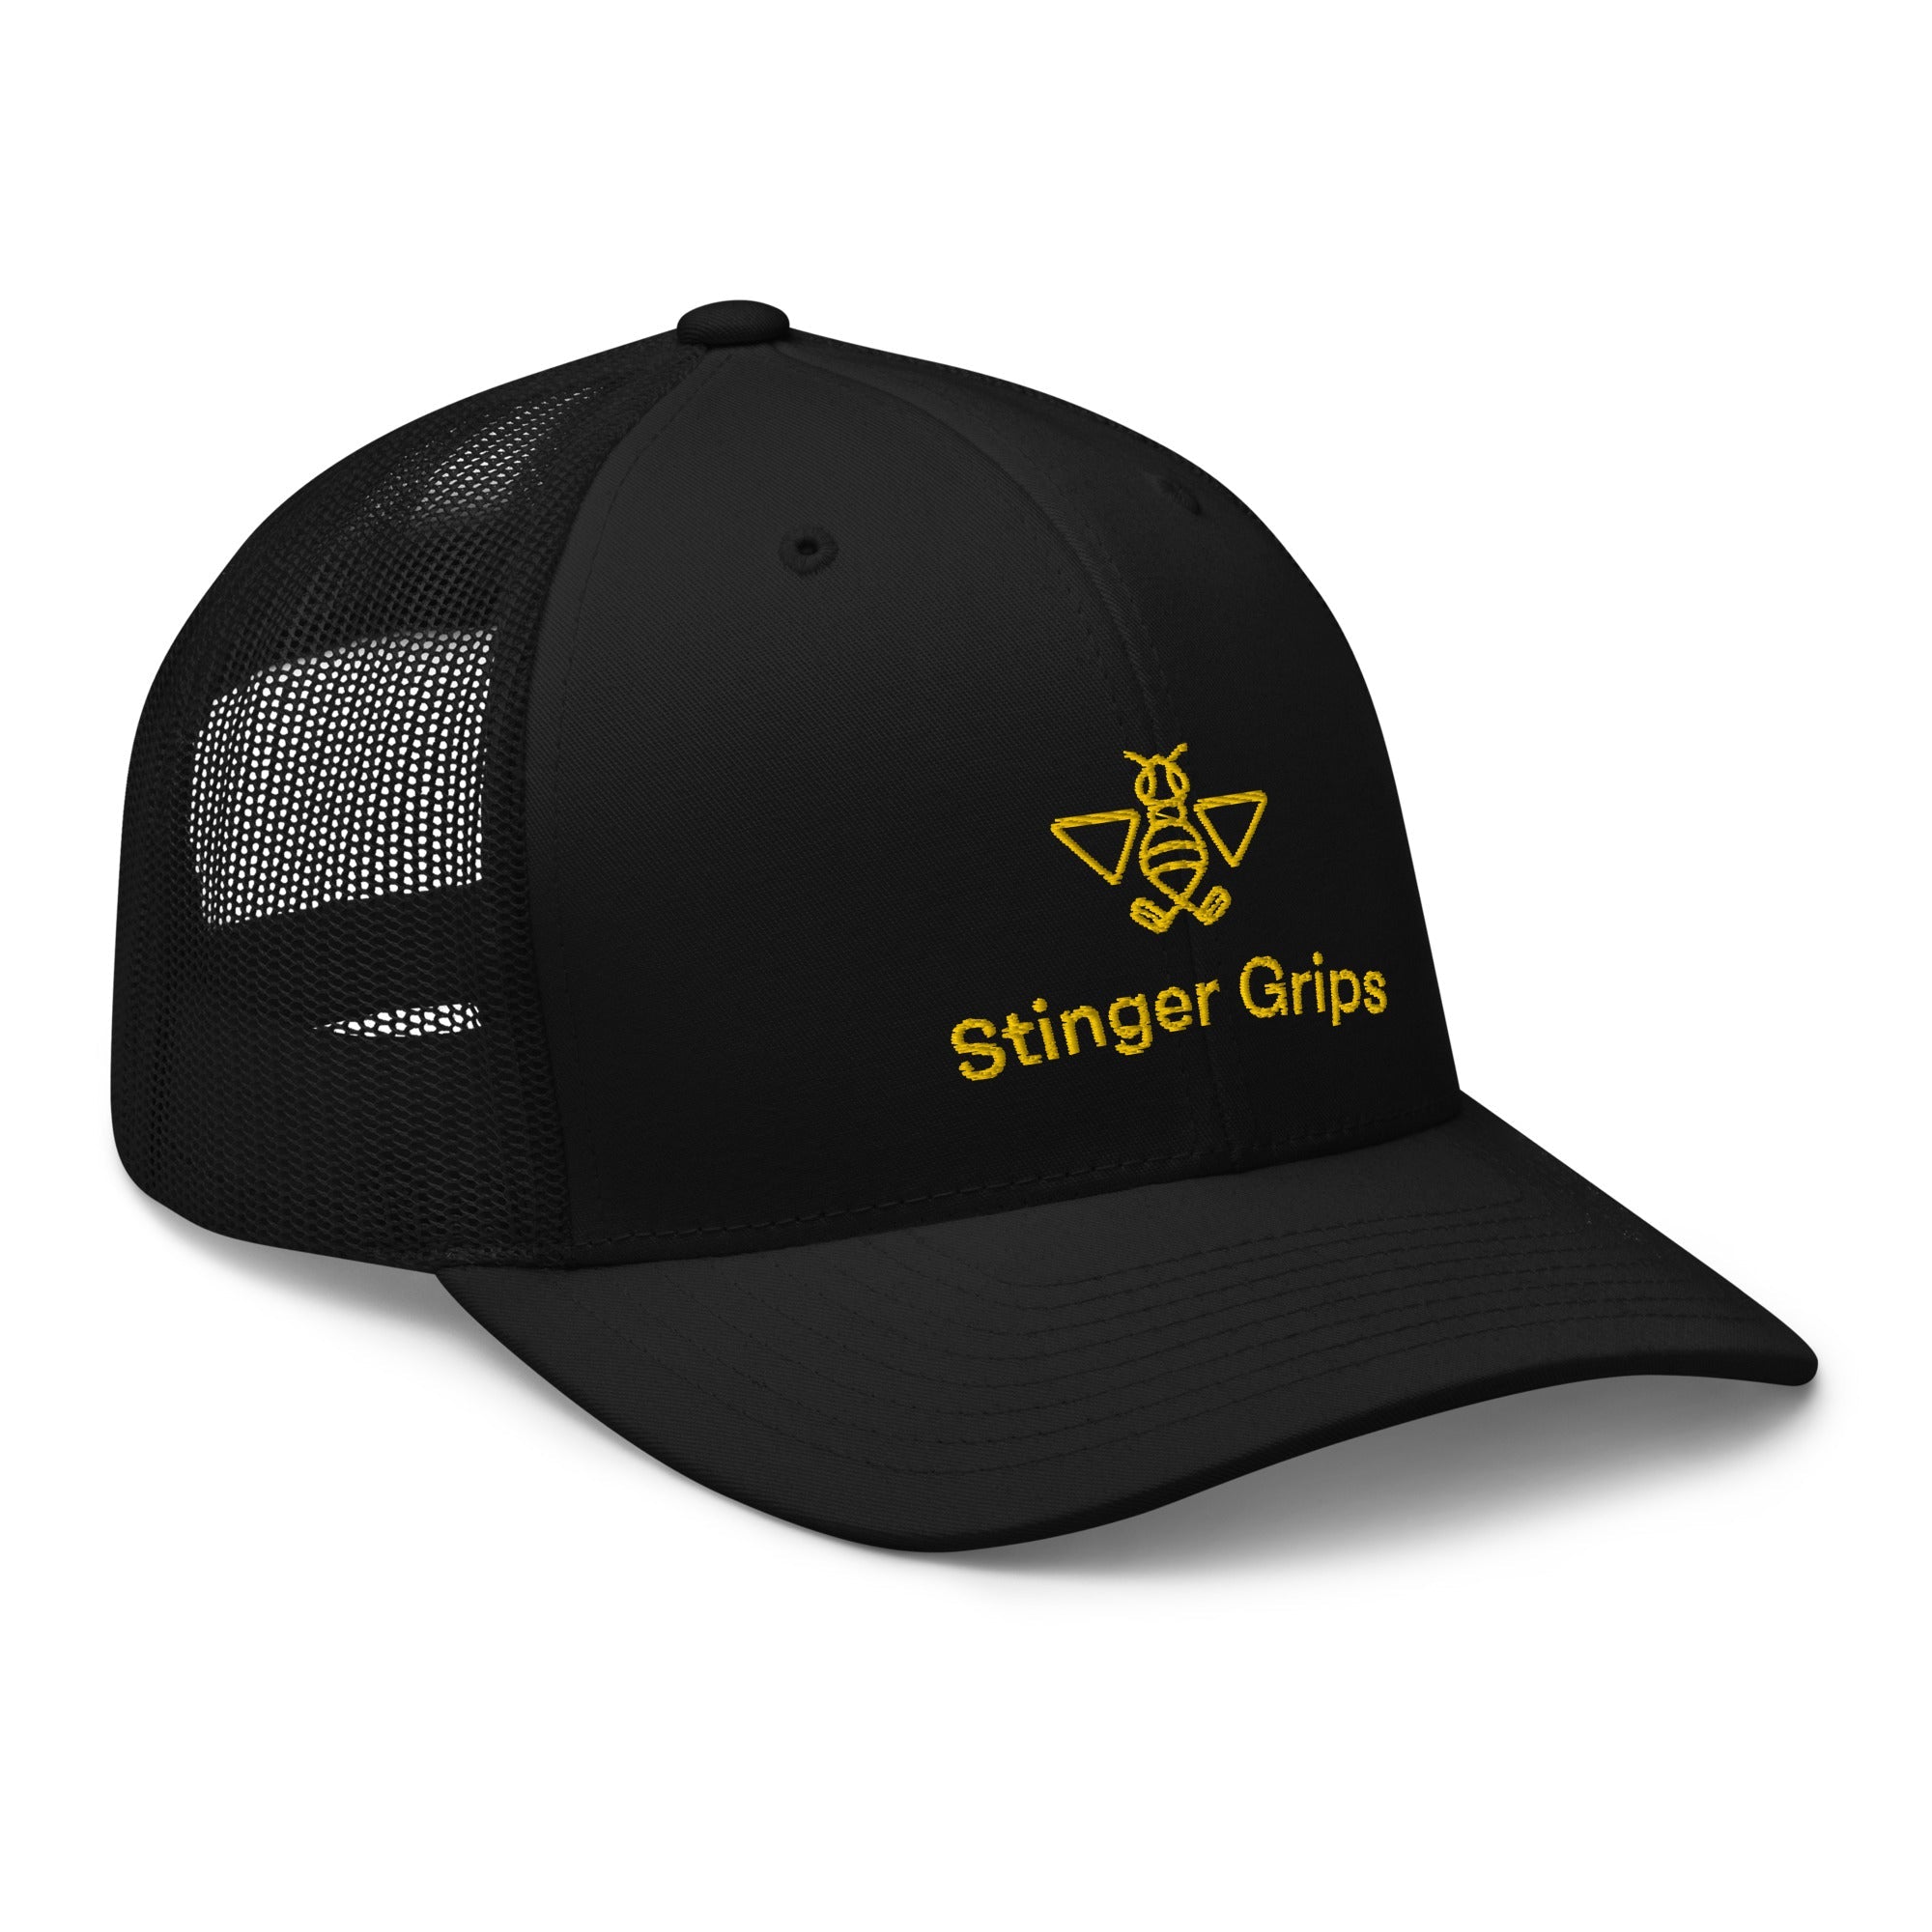 Trucker Golf Hat - Stinger Grips